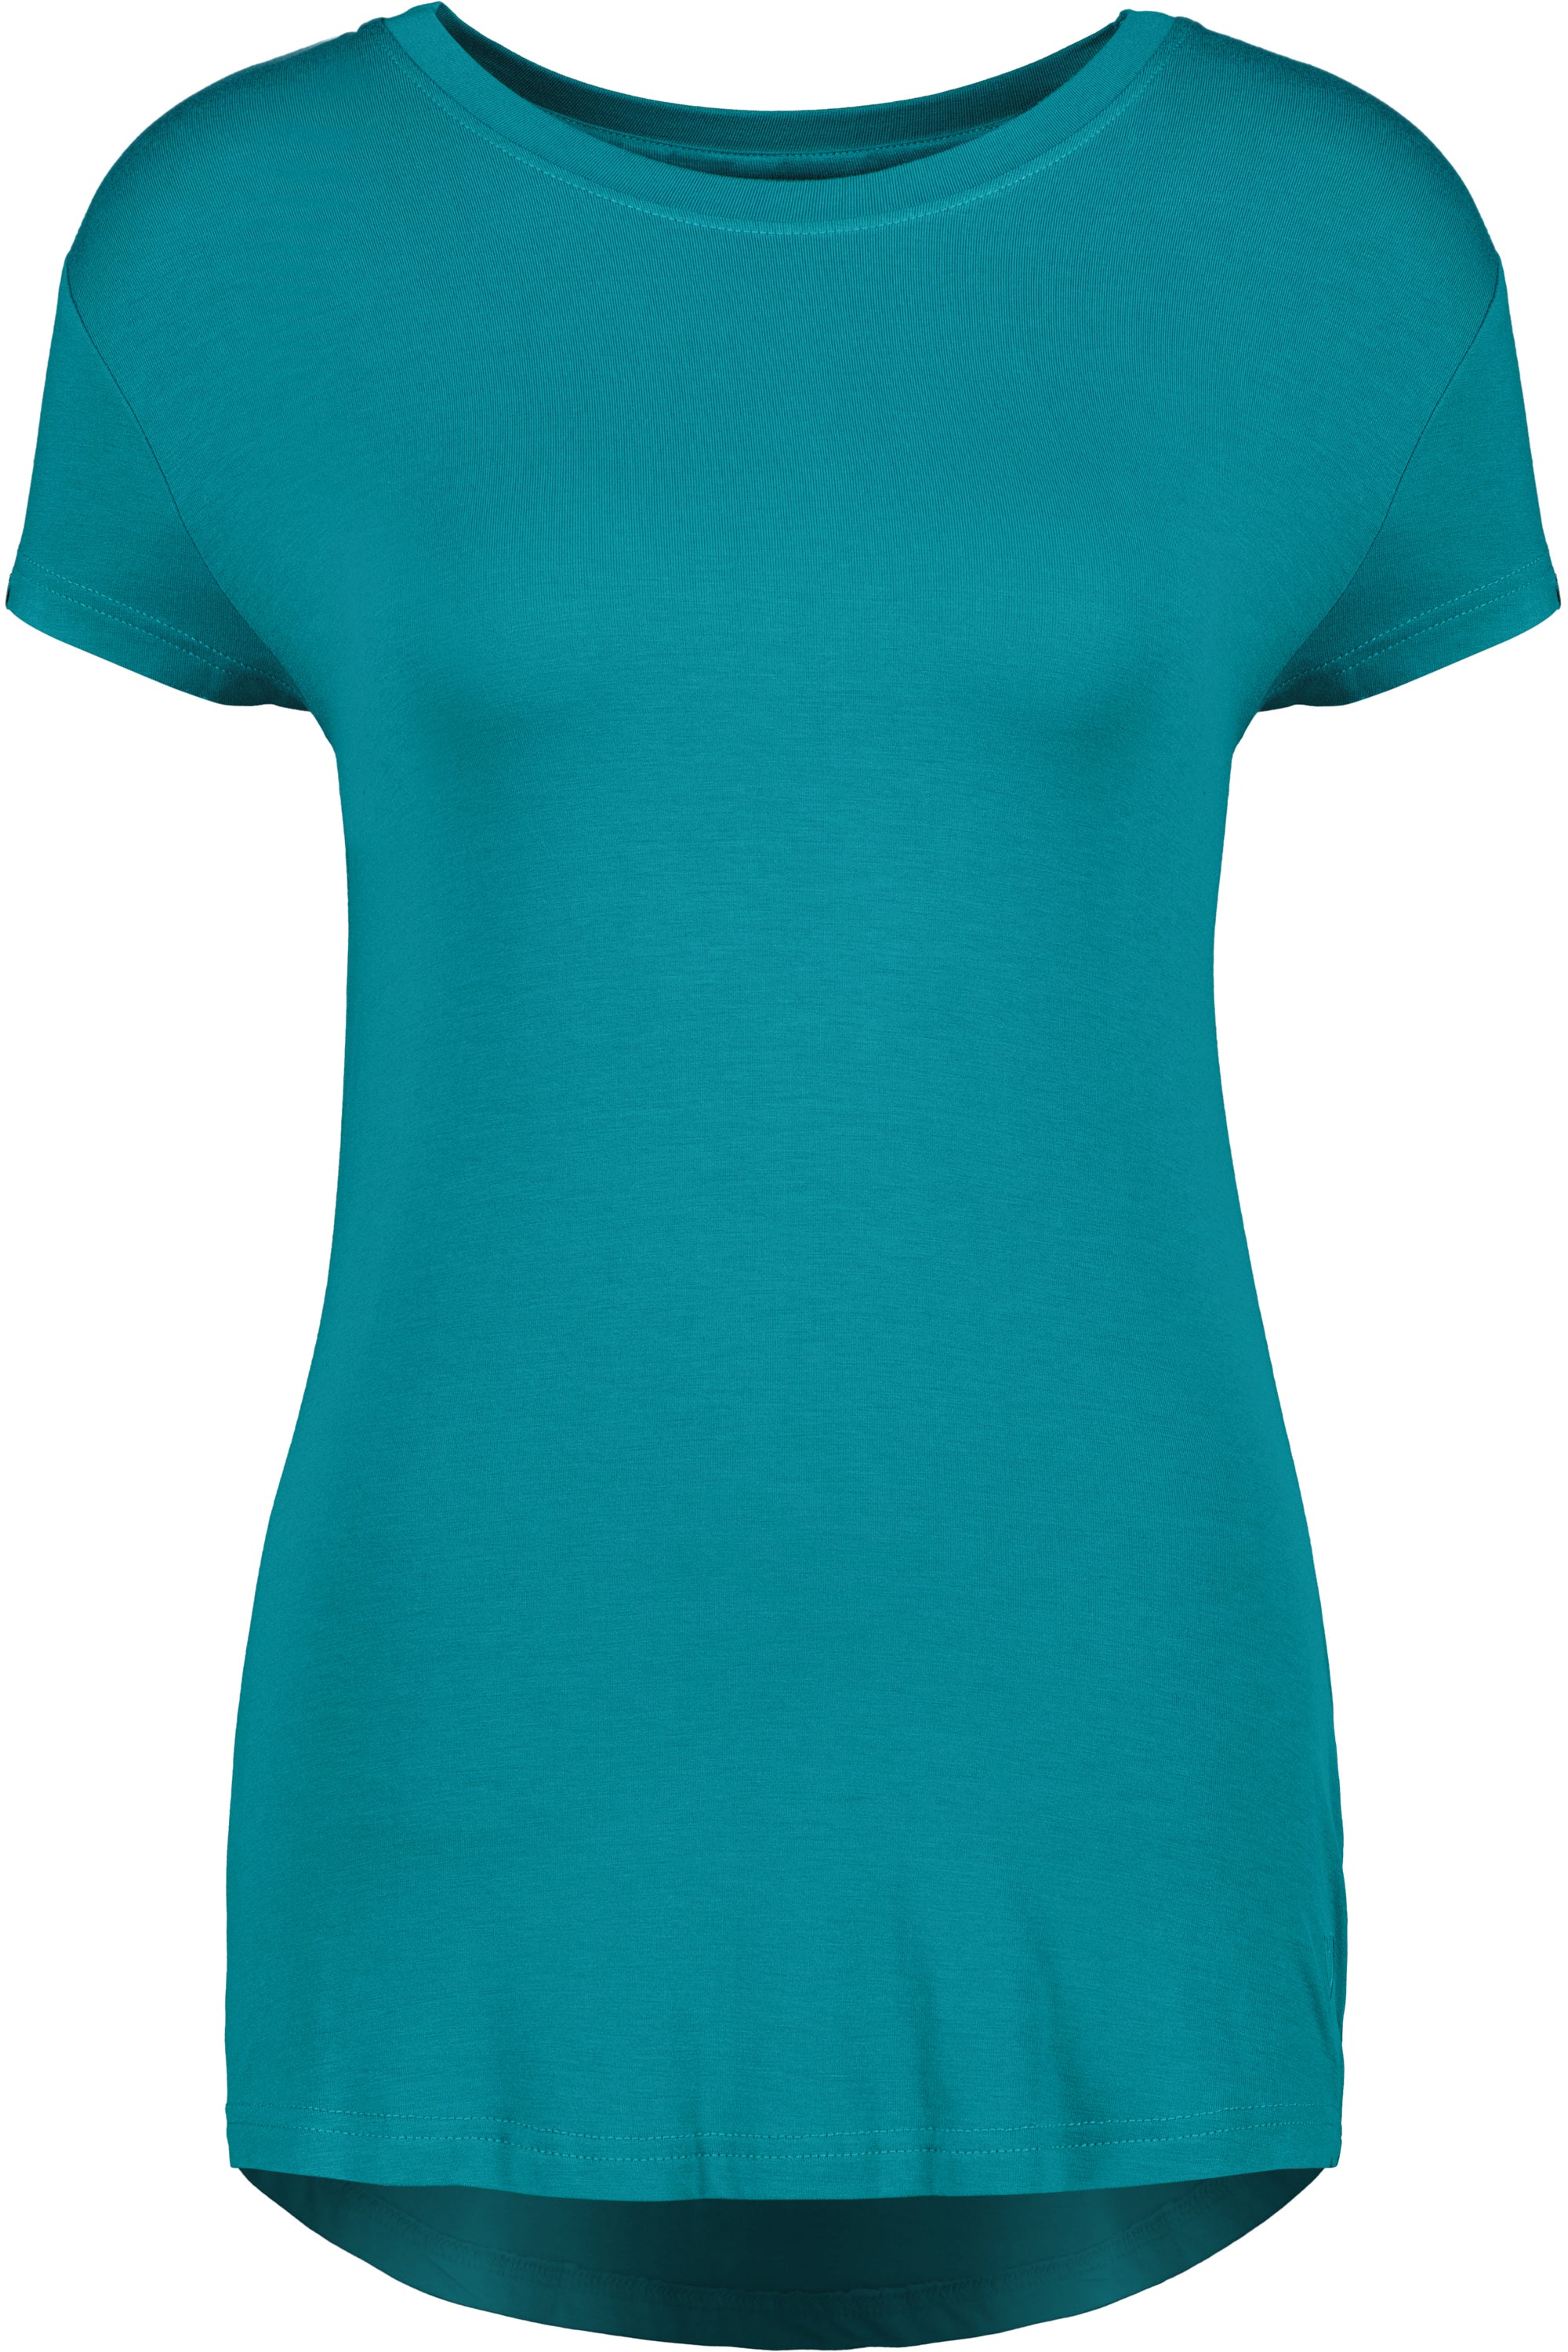 T-Shirt MimmyAK A für Damen - Stilvoll kombinierbar und angenehm zu tragen Dunkelgrün